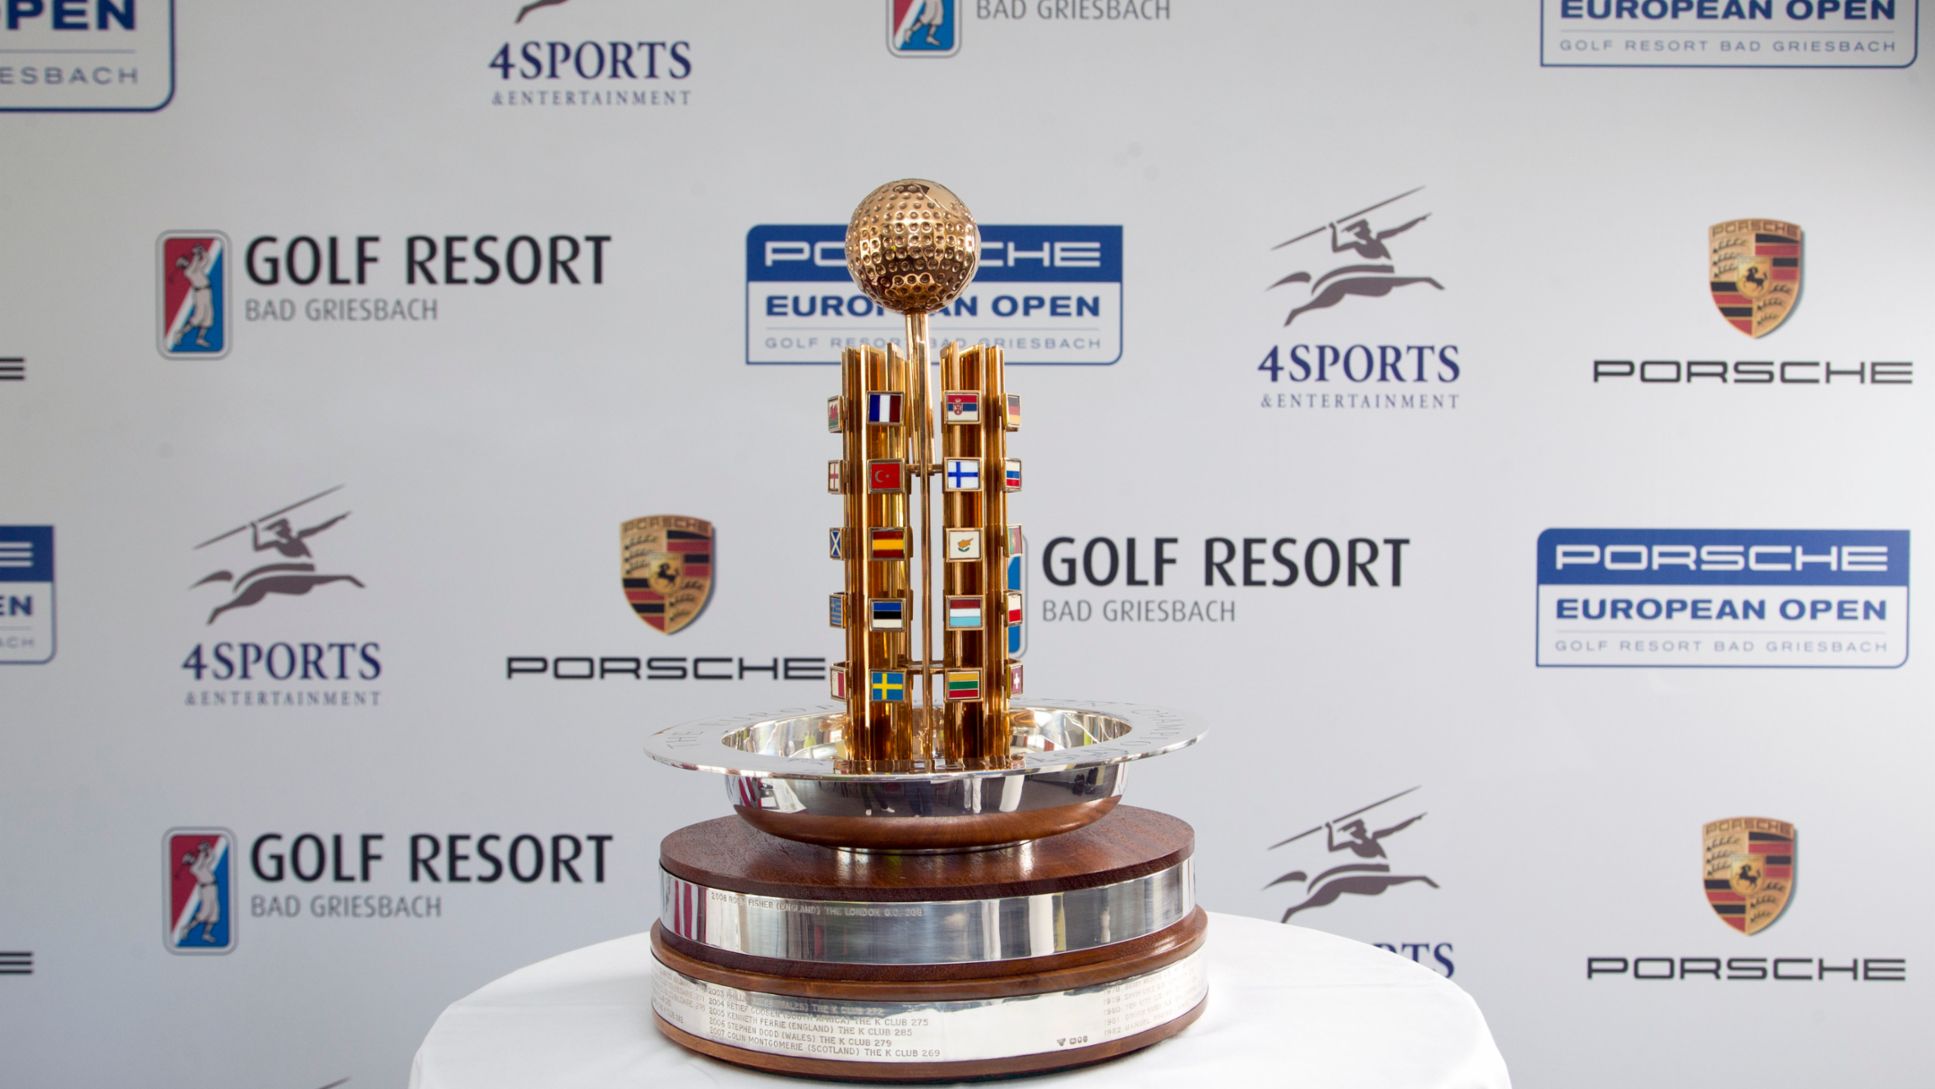 Porsche European Open Pokal, Golfresort Bad Griesbach, 2015, Porsche AG